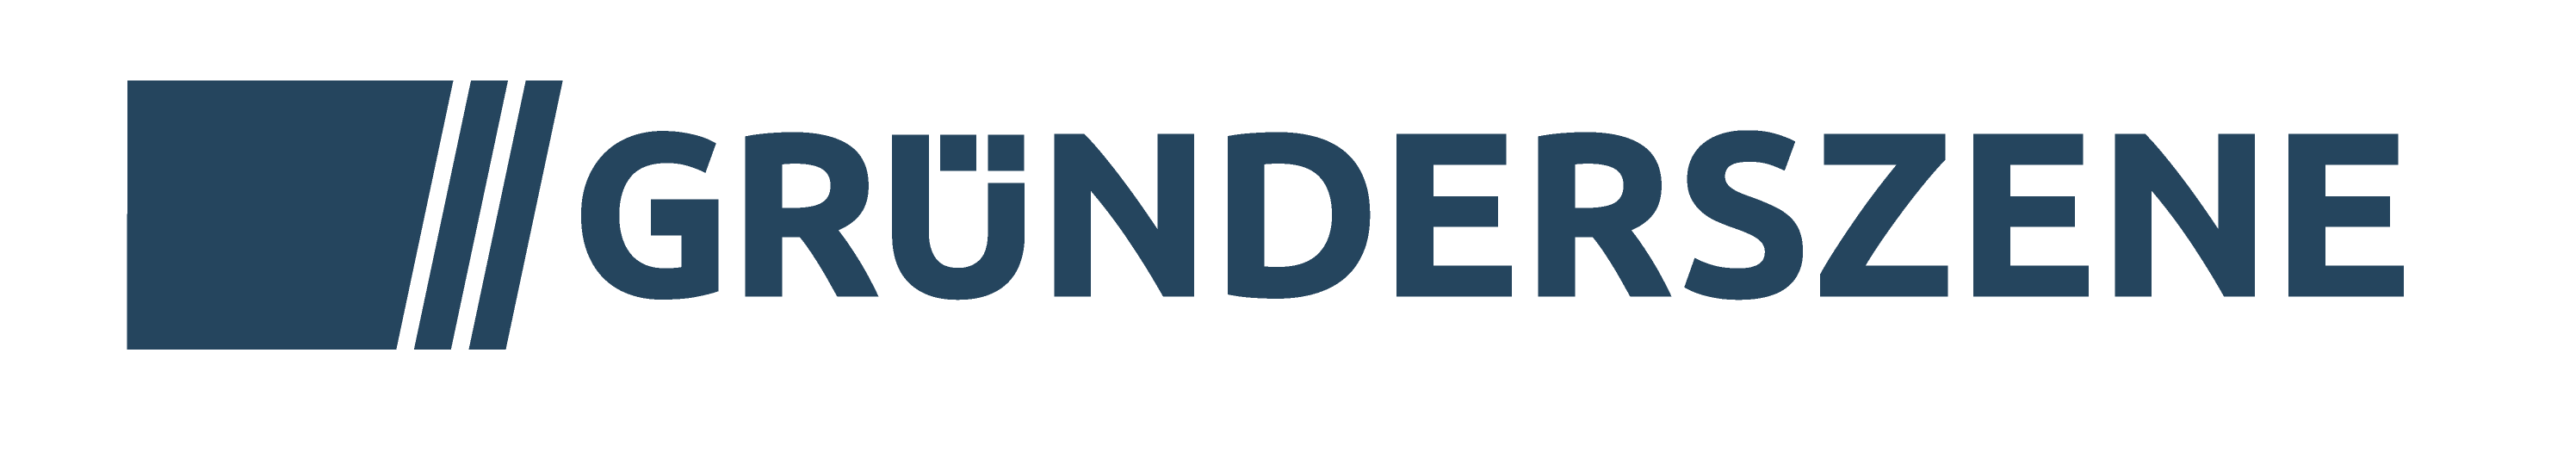 Gruenderszene_Logo_